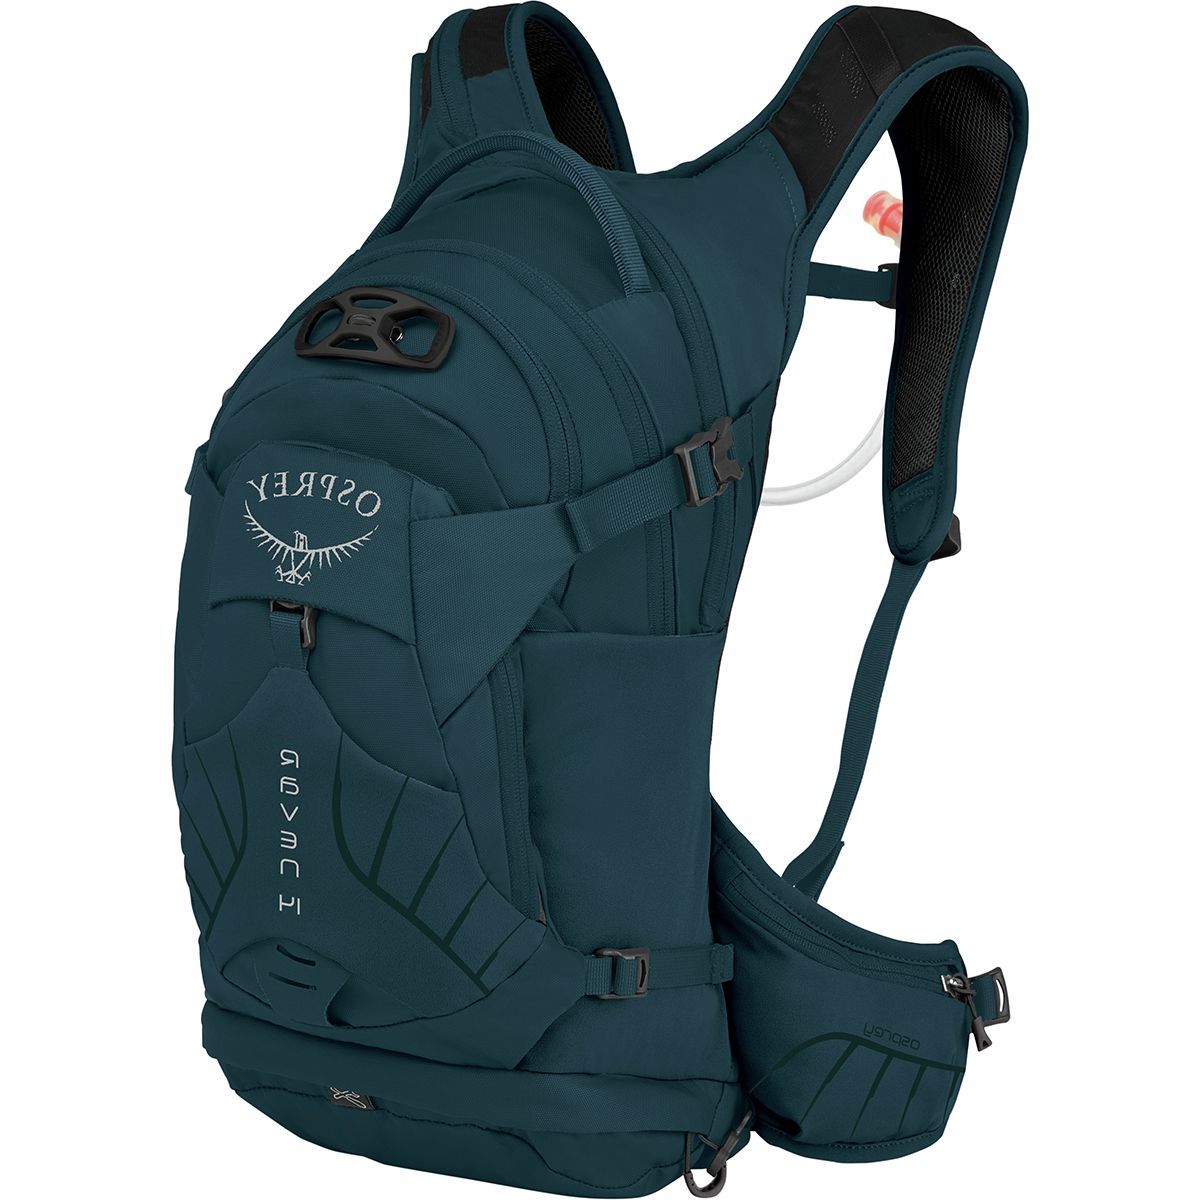 Osprey Packs Raven 14L Backpack - Women's